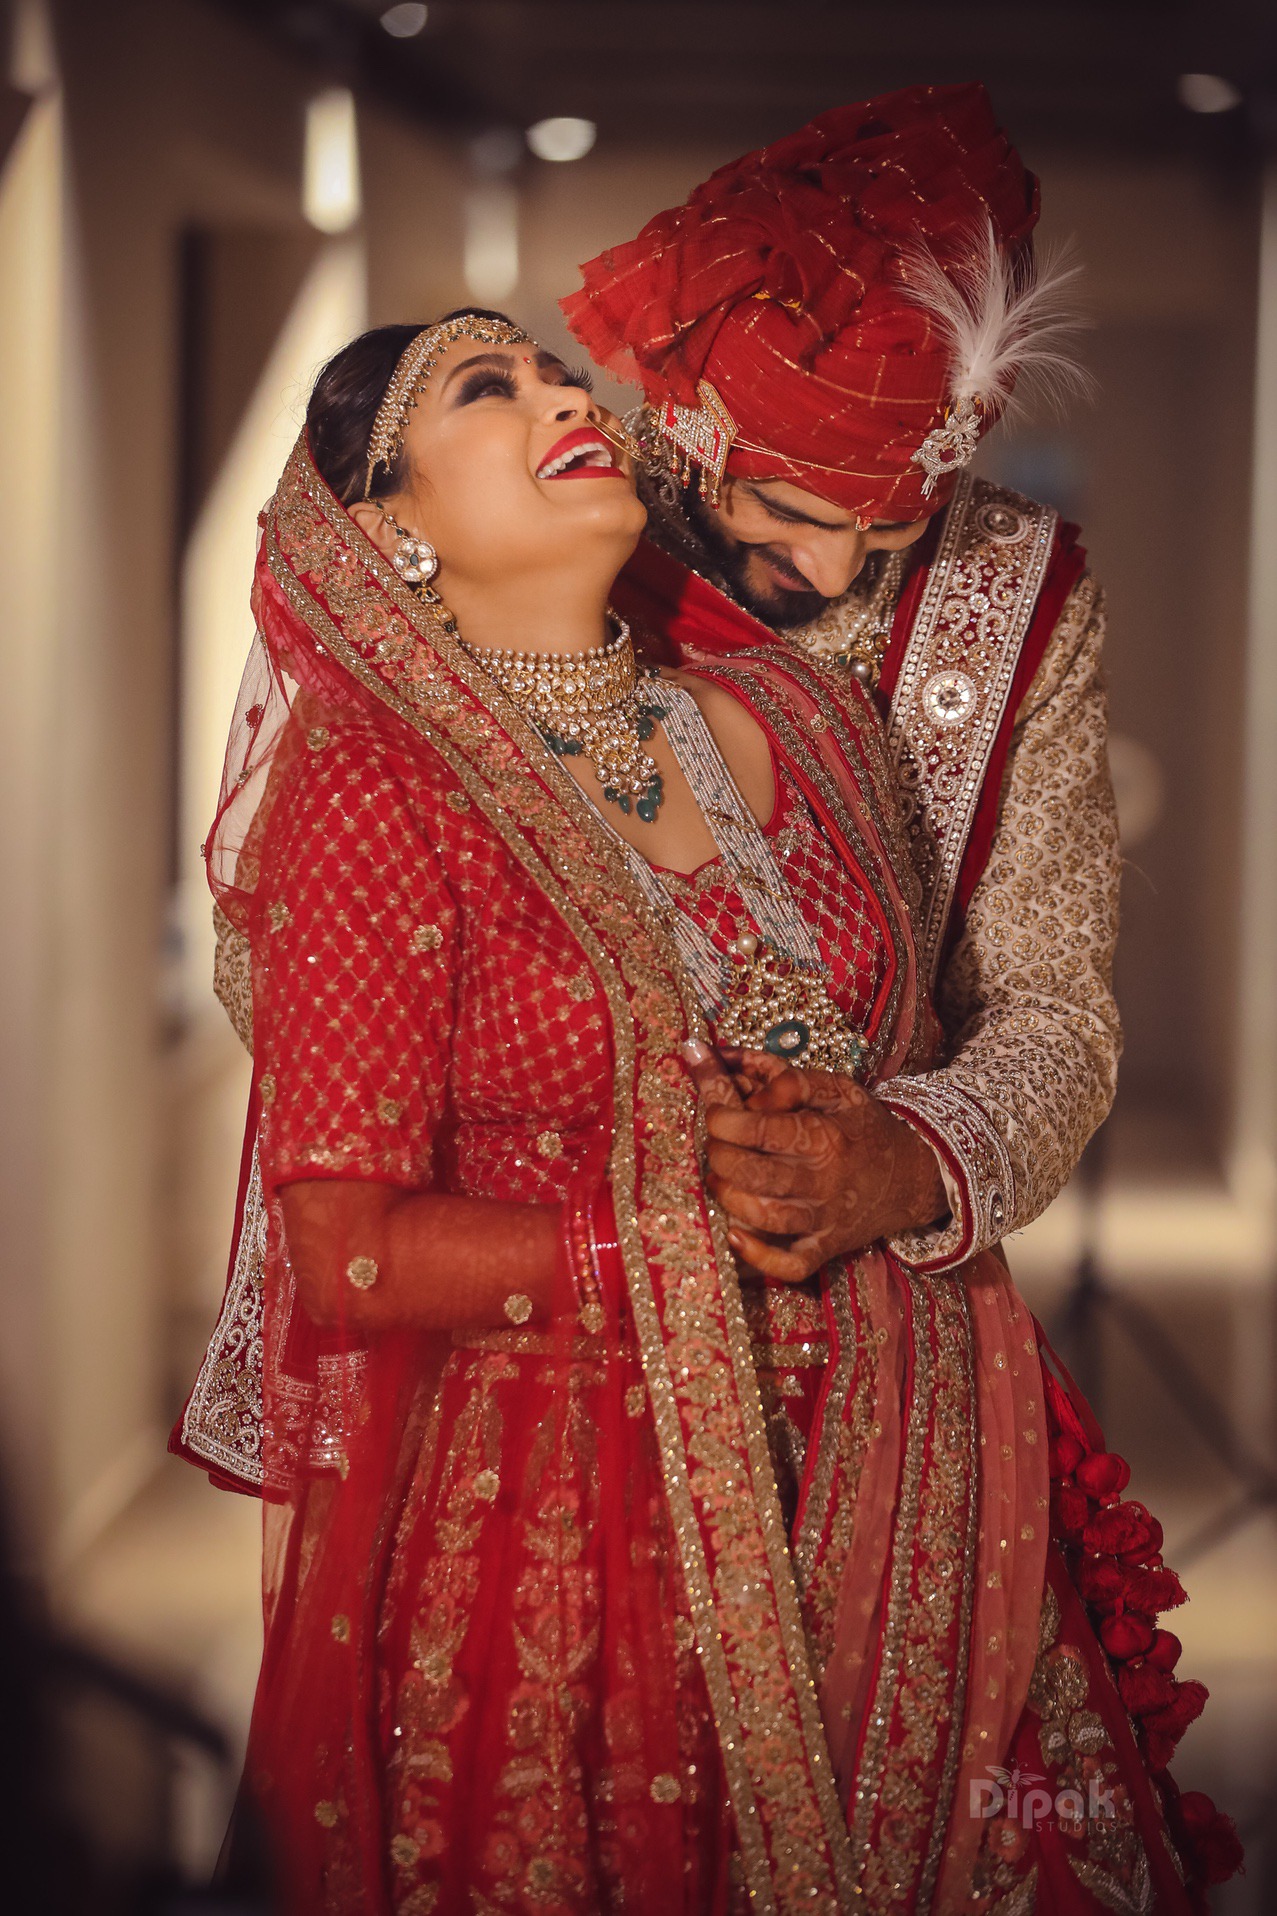 Importance of Bridal Photoshoot